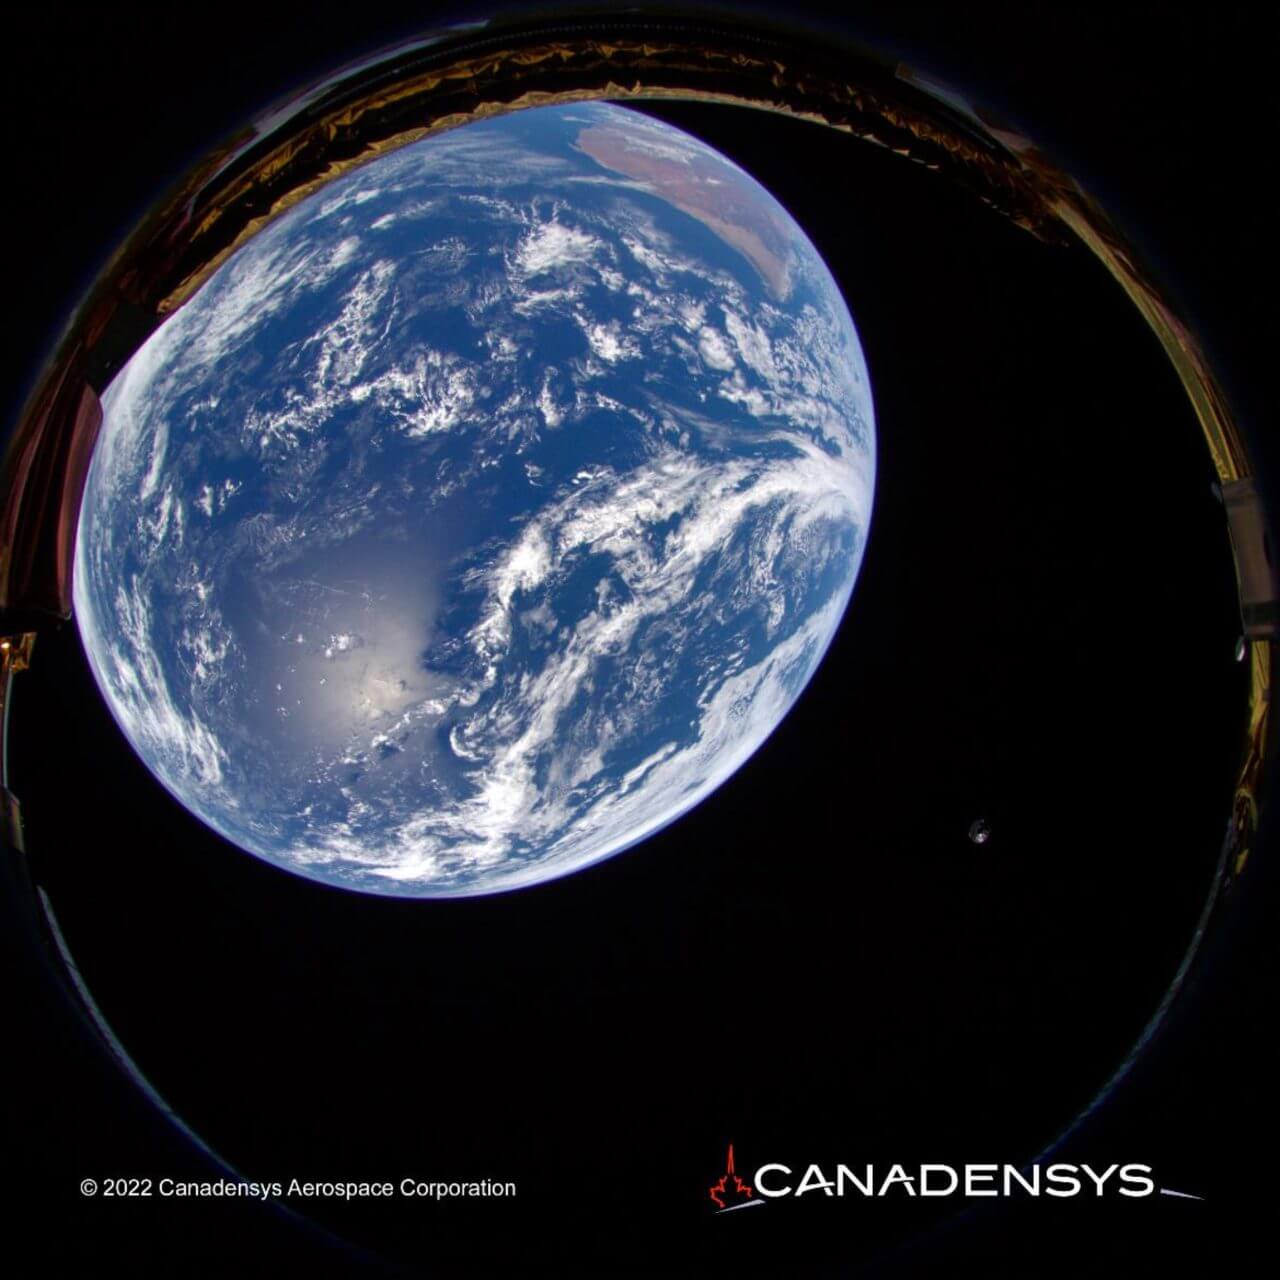 HAKUTO-Rミッション1ランダーに搭載されているCanadensys Aerospace社のカメラで撮影された地球